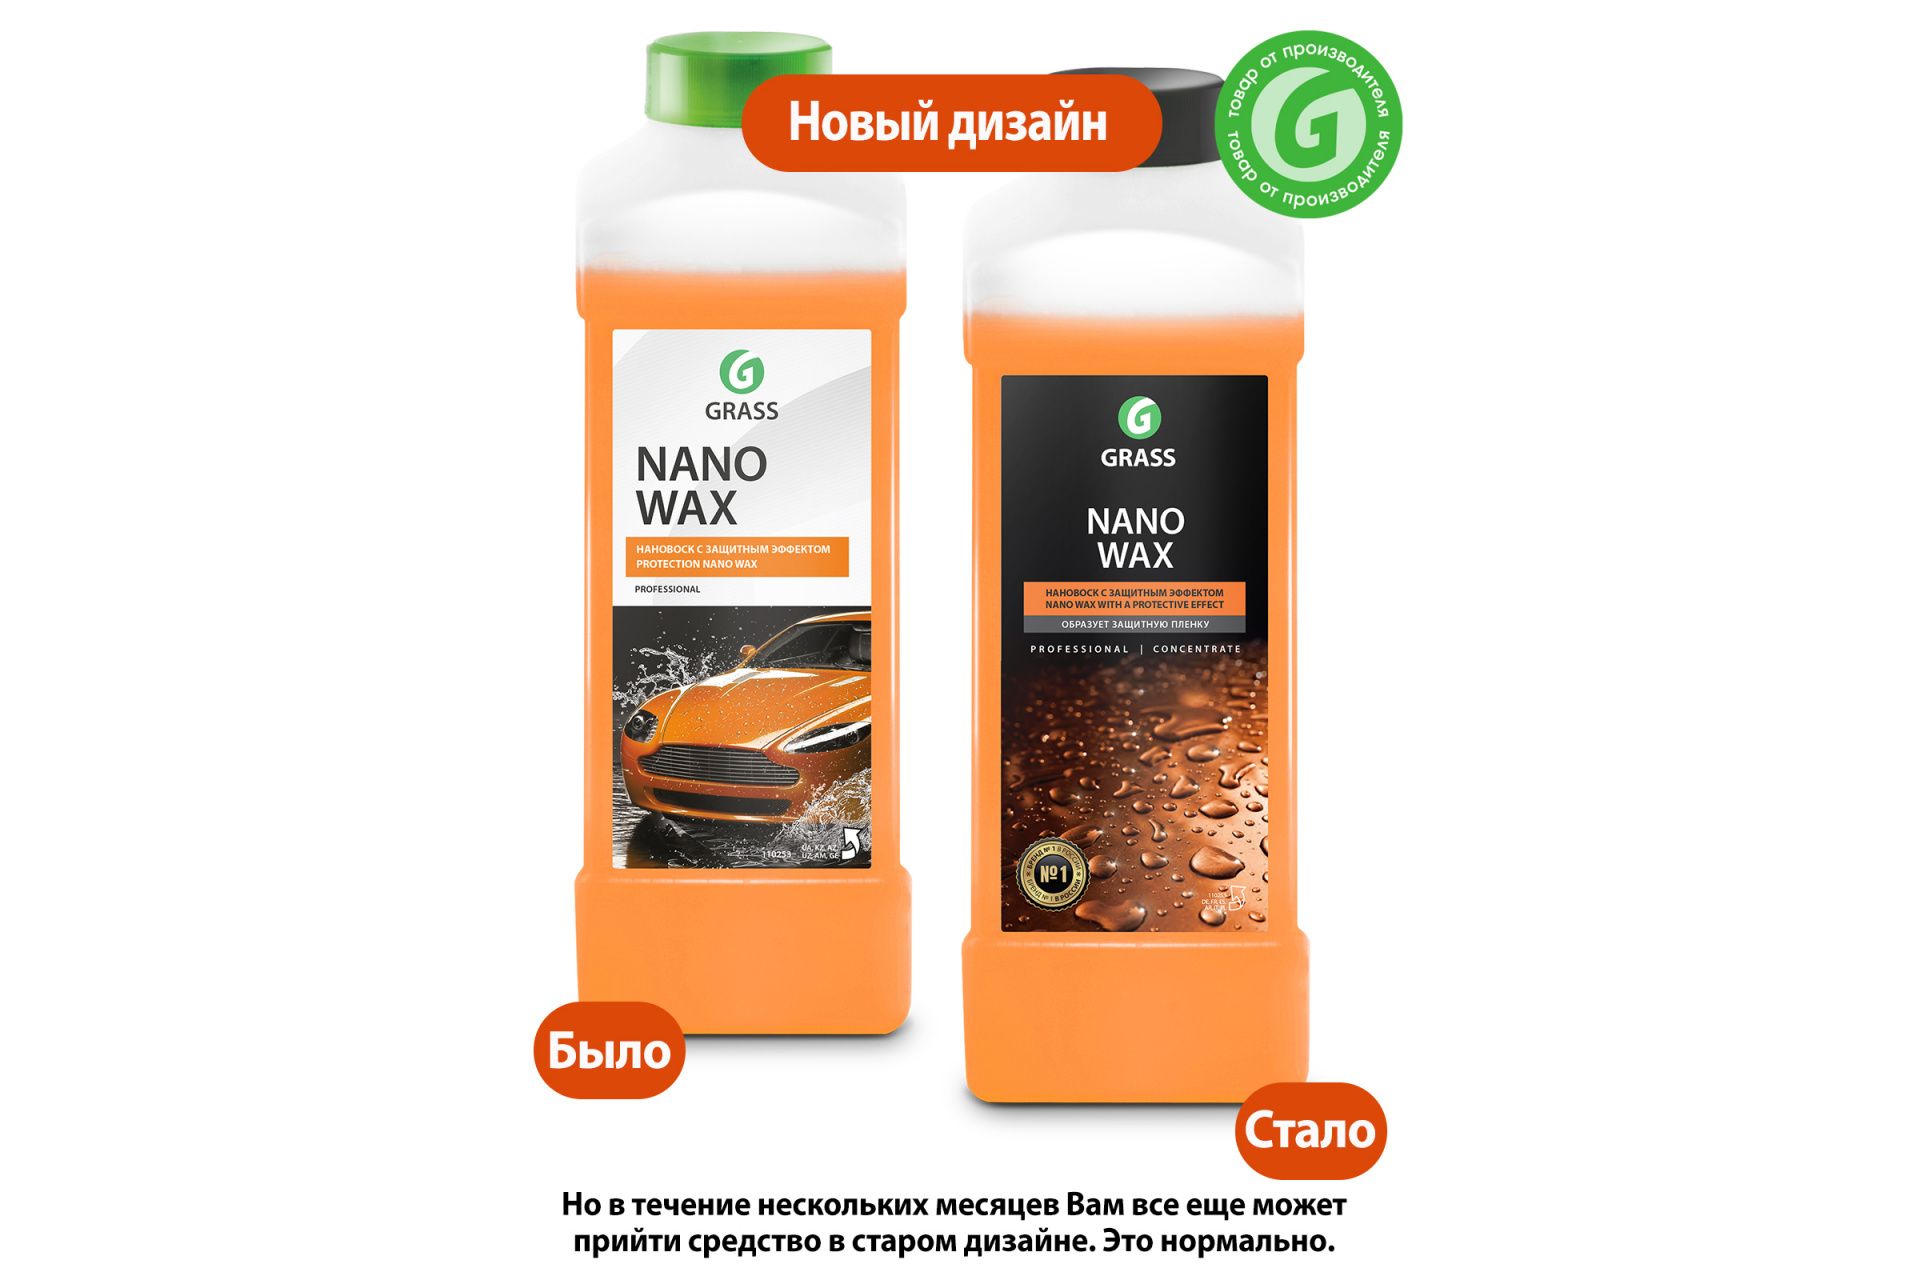 Нановоск с защитным эффектом GRASS "Nano Wax" 1л.